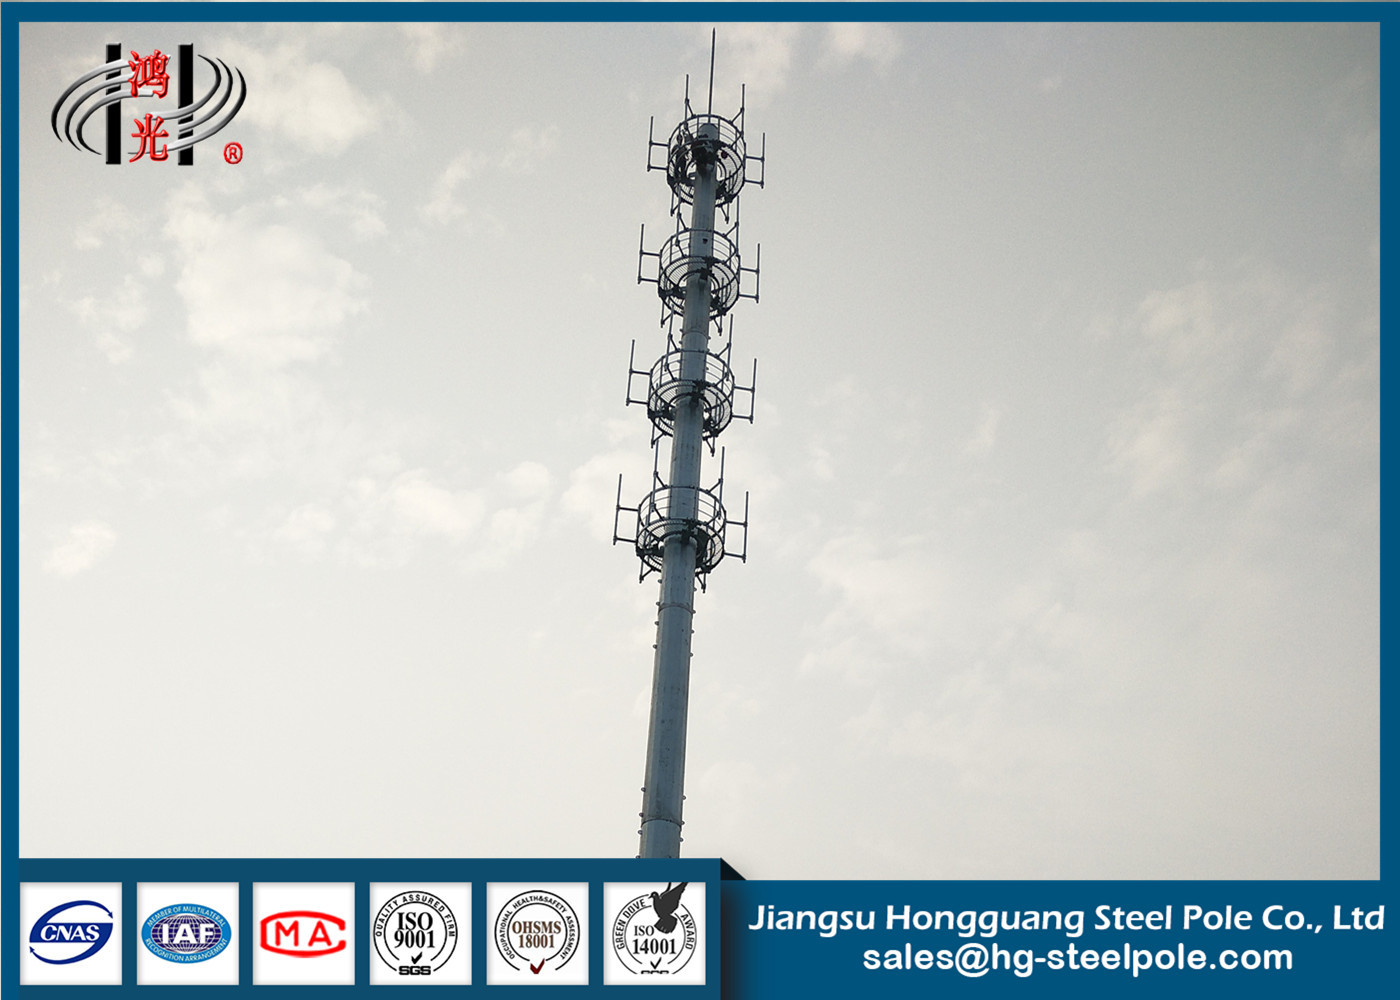 Mikrowelle Q235 ragt beweglicher Handy-Turm mit vier Plattformen hoch